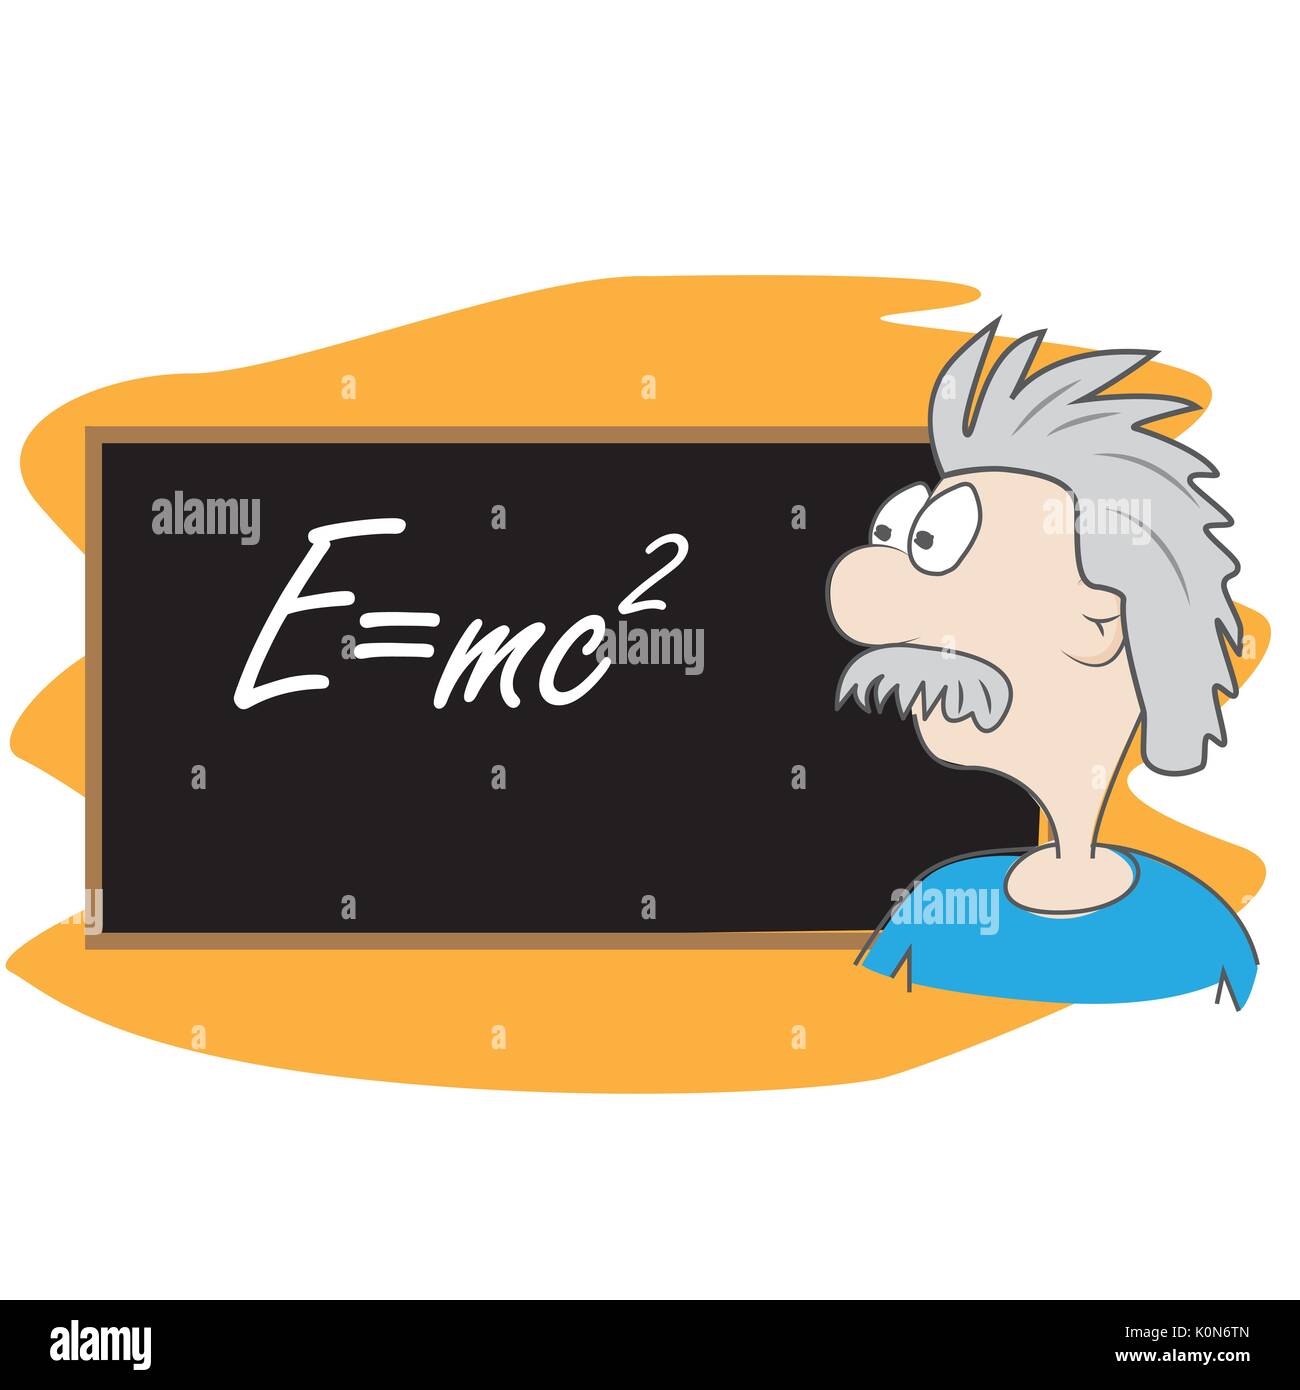 Albert Einstein vector cartoon. illustration scientifique à l'avant du conseil avec sa célèbre formule E =mc2 Illustration de Vecteur